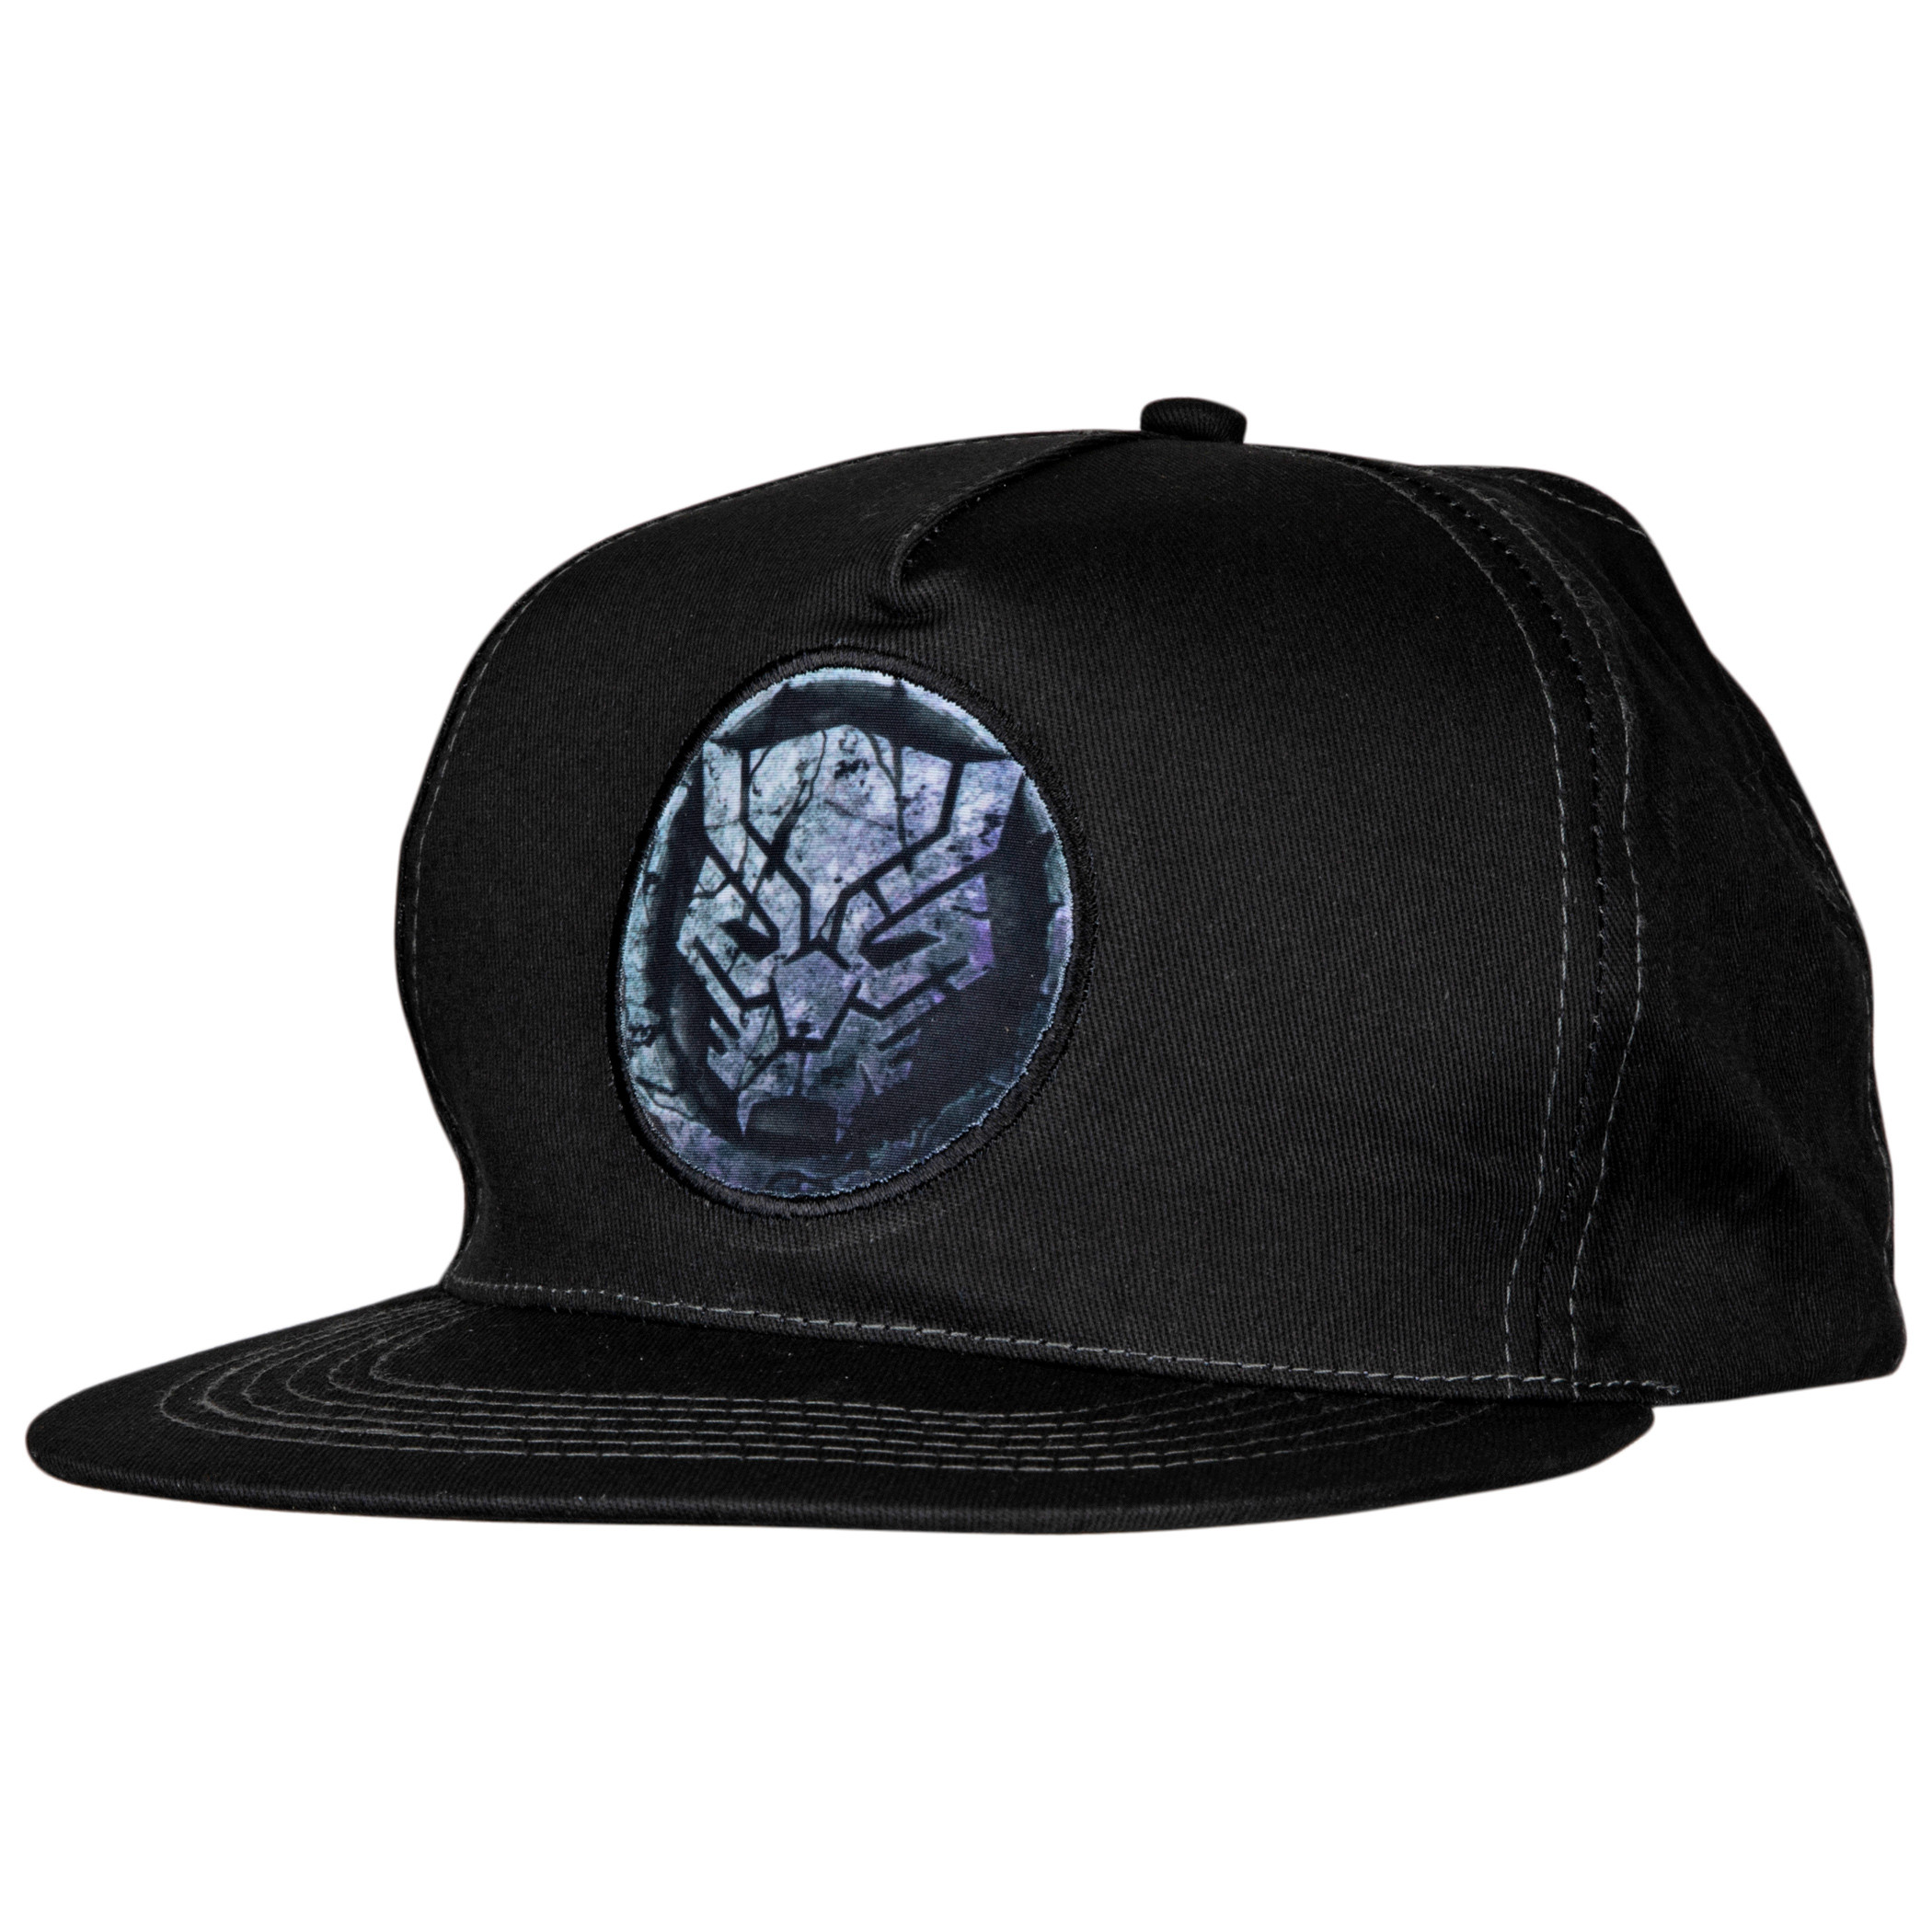 Avengers Black Panther Cracked Stone Logo Adjustable Snapback Hat